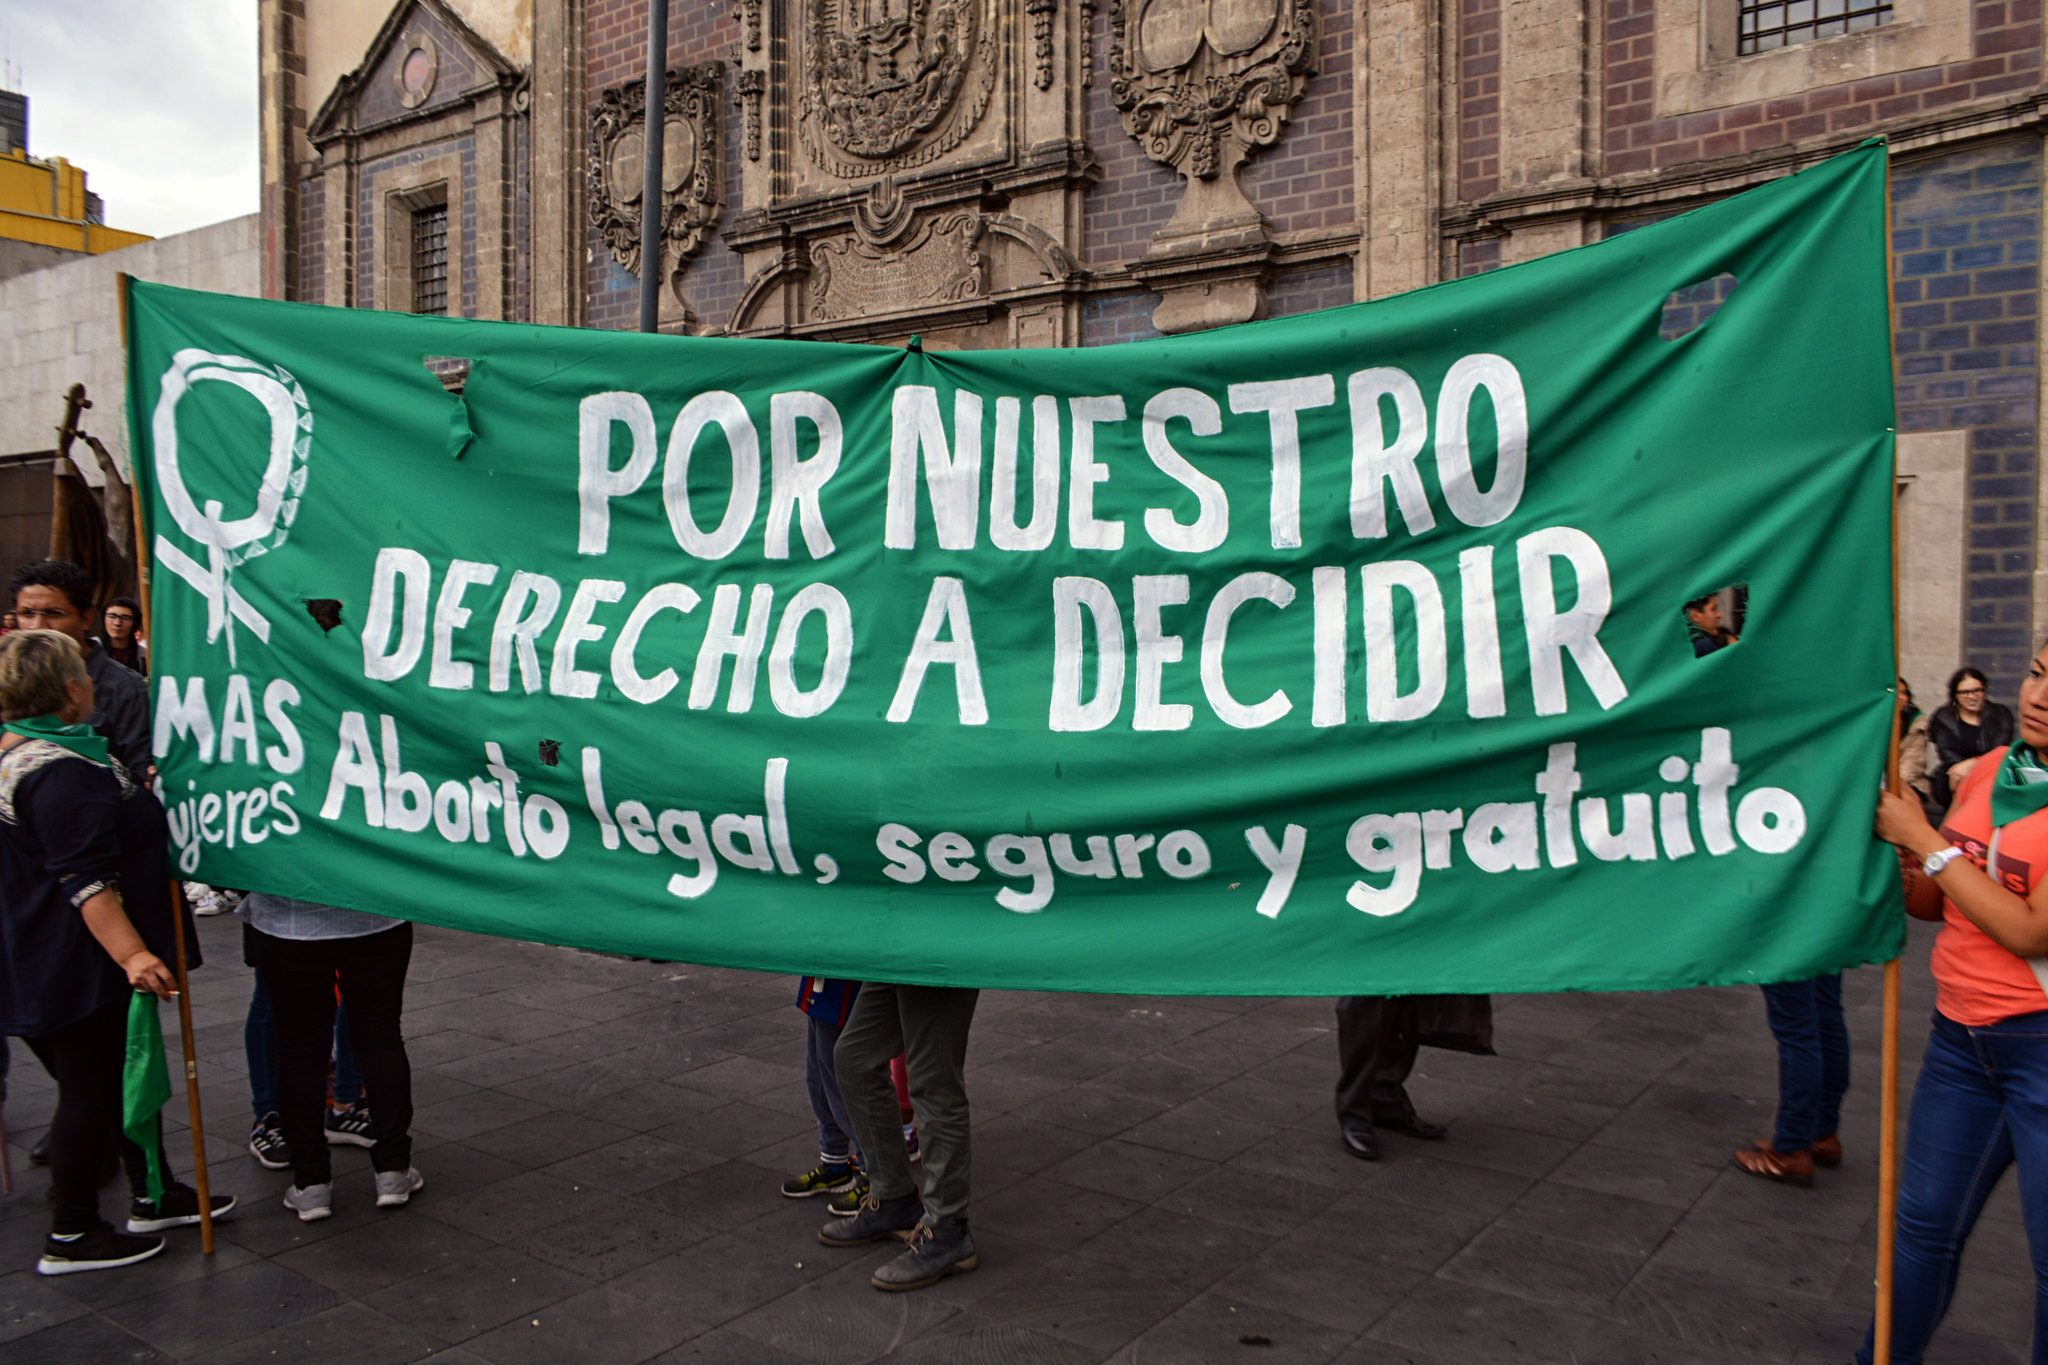 Agosto de 2o18: Mujeres en Ciudad de México se manifestaron en apoyo al proyecto de ley de despenalización del aborto, el cual no fue aprobado. Foto: Flickr / Protoplasma K